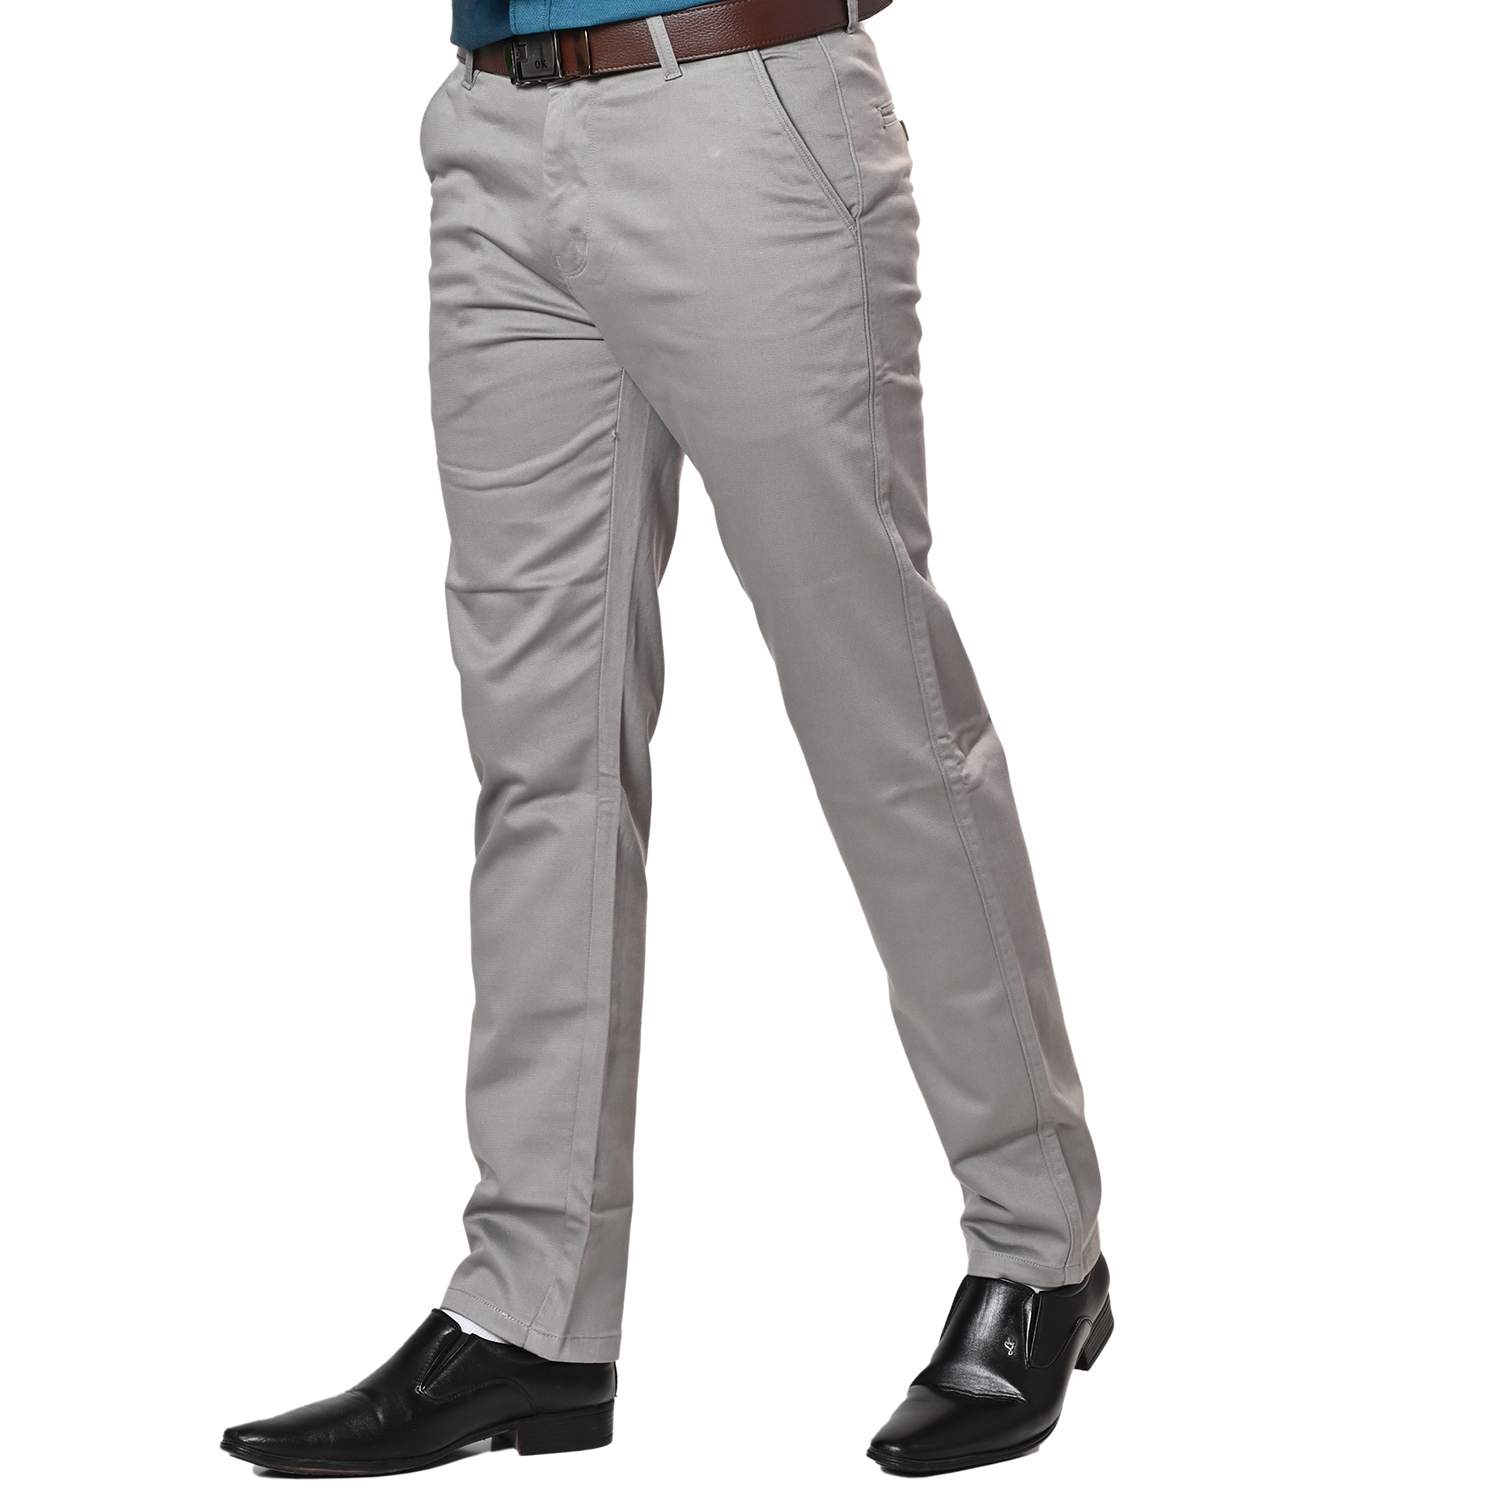 SPARKY Solid Men Grey Track Pants  Buy Grey SPARKY Solid Men Grey Track  Pants Online at Best Prices in India  Flipkartcom